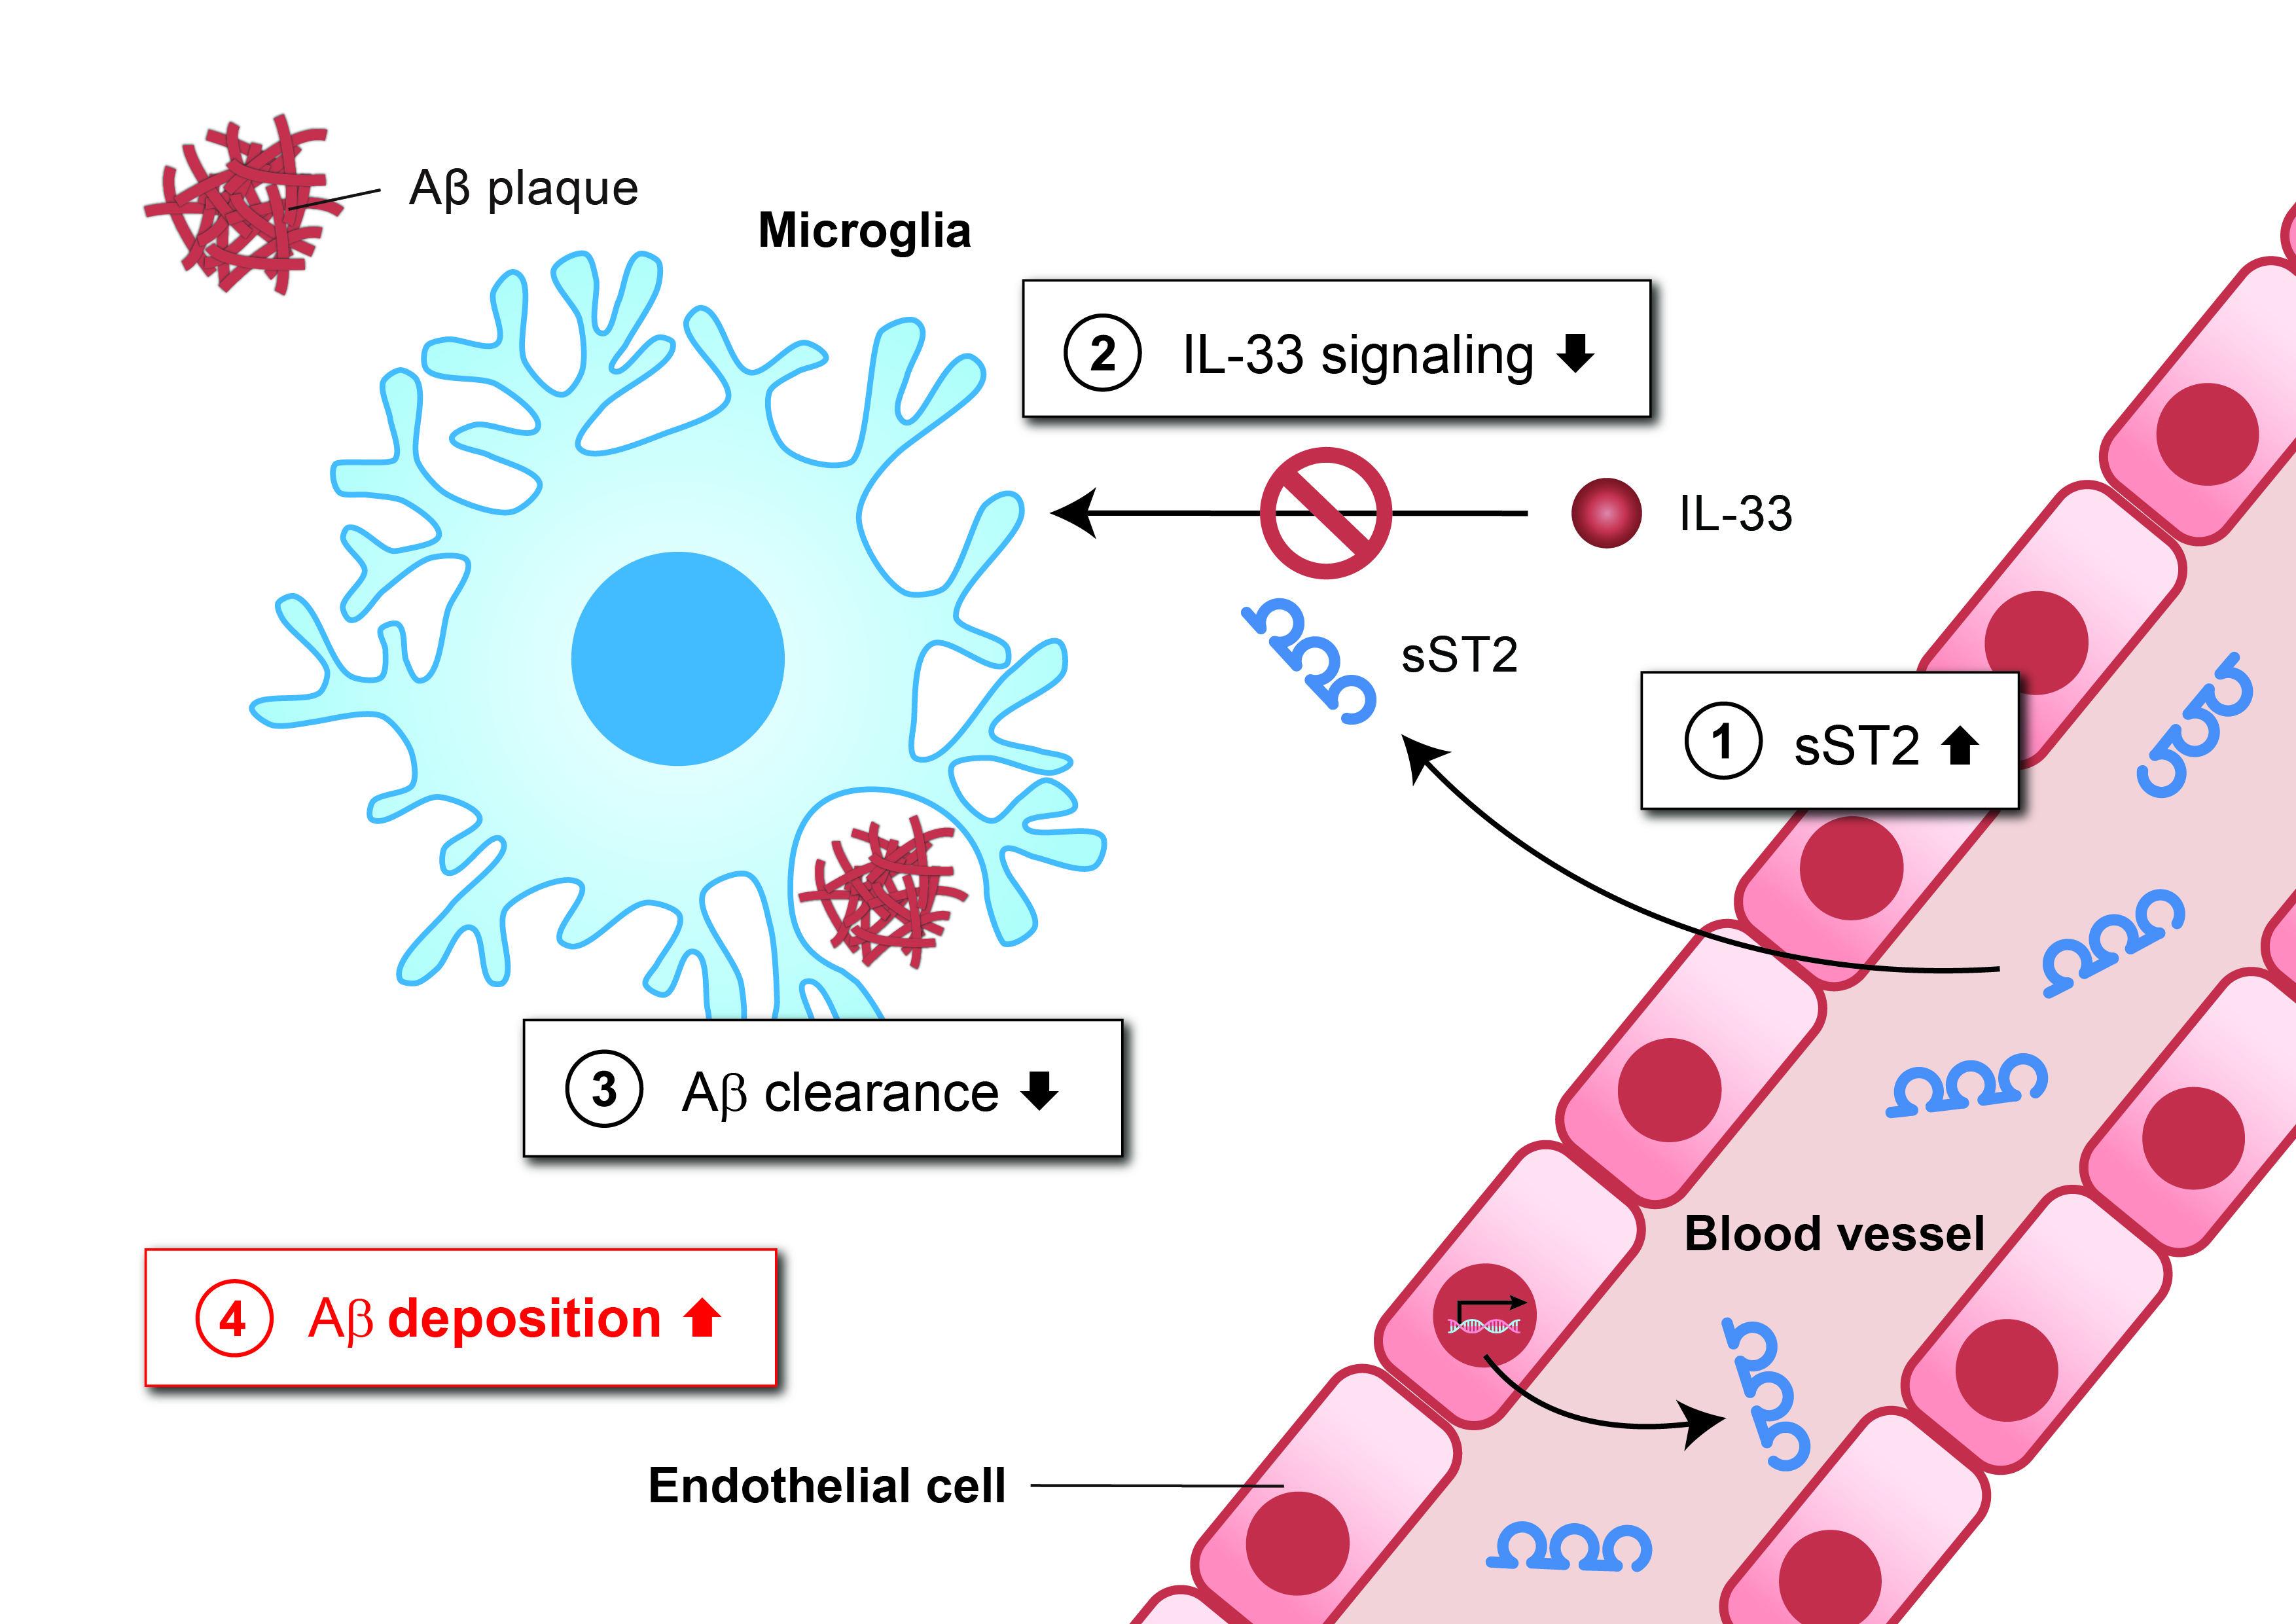 該圖顯示在AD患者大腦中，高濃度sST2是如何抑制小膠質細胞清除Aβ的功能：血液中的 sST2蛋白進入大腦(1)。sST2作為誘餌受體，可以與IL-33結合，阻斷小膠質細胞中正常的IL-33信號傳導(2)，從而降低小膠質細胞清除Aβ的能力(3)，導致Aβ斑塊聚集(4)。